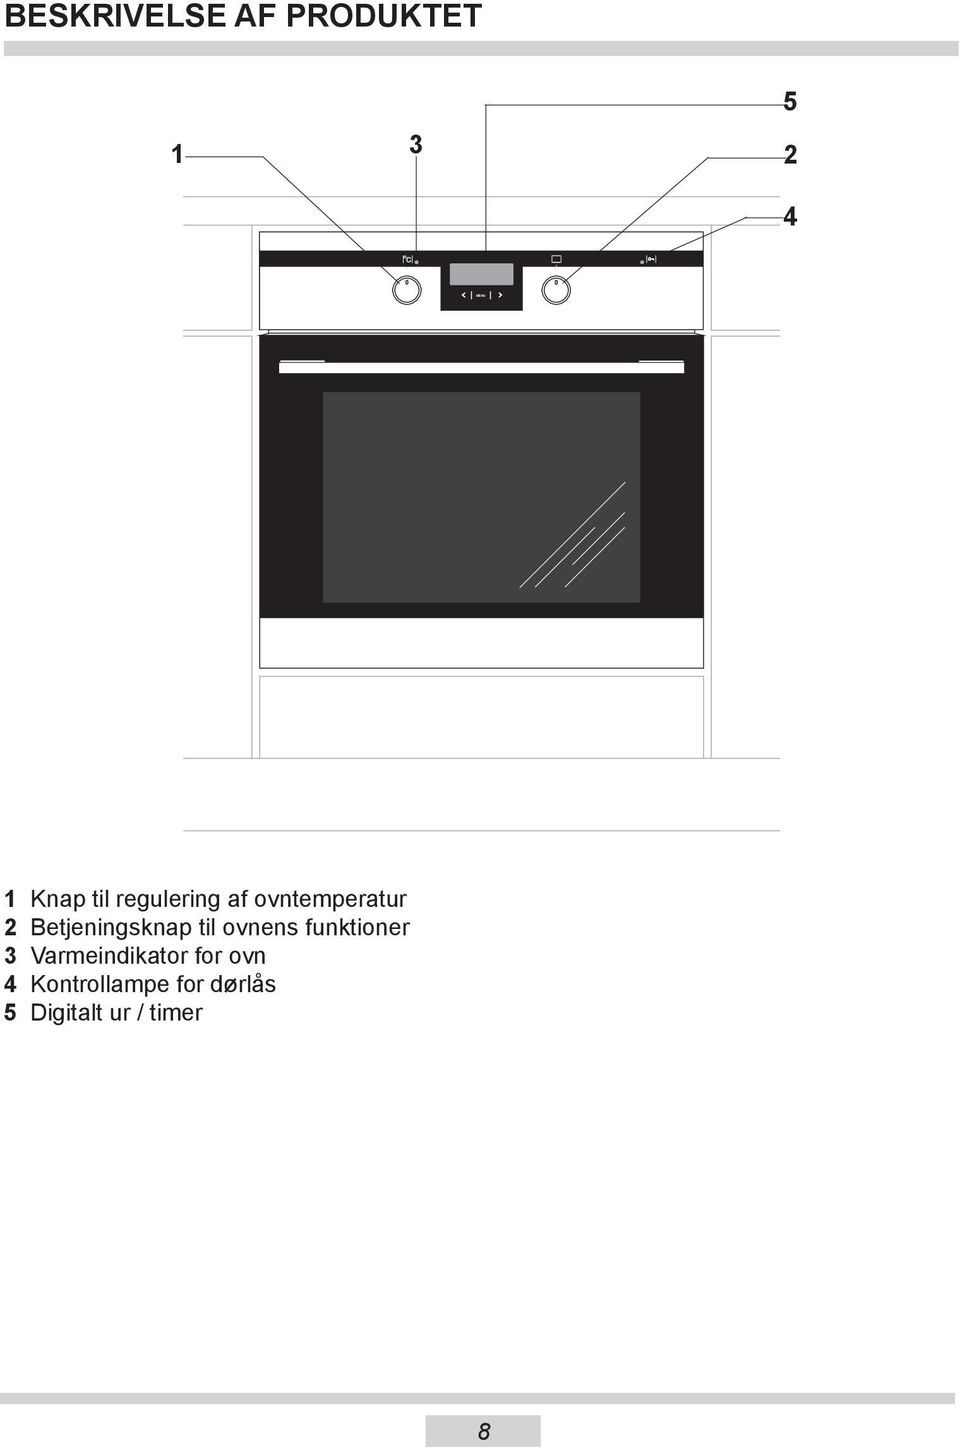 Betjeningsknap til ovnens funktioner 3